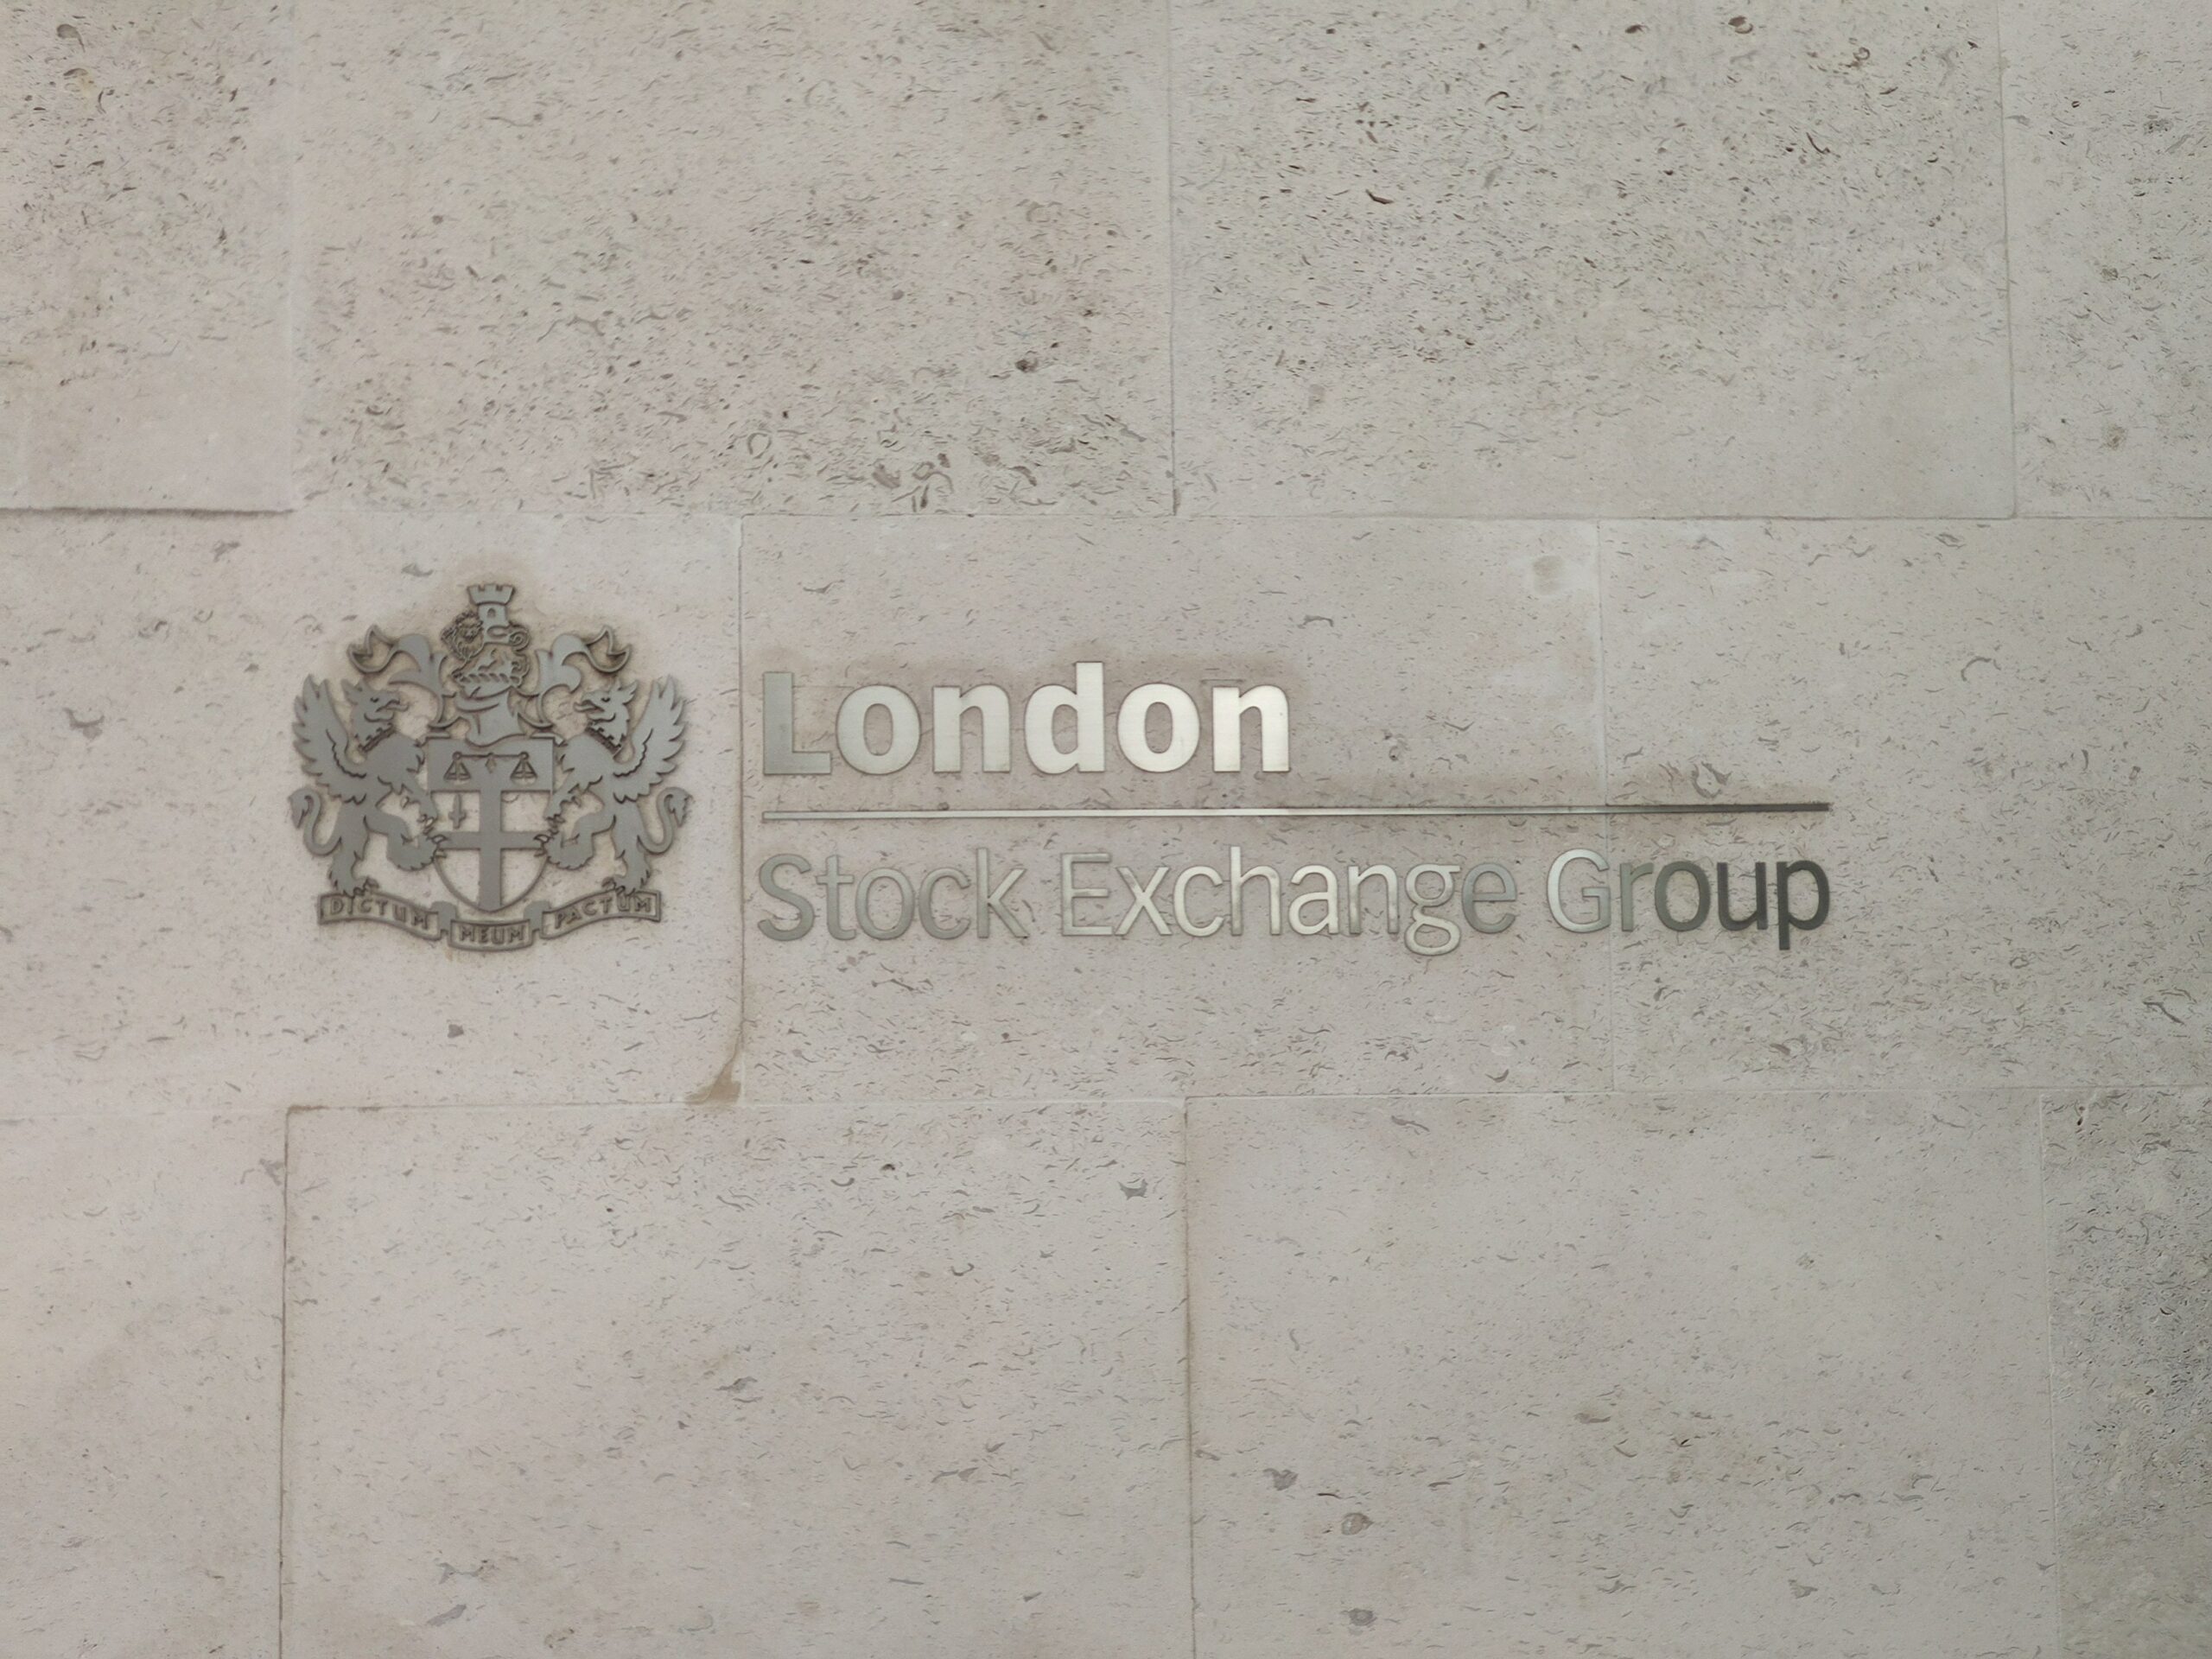 Außenseite eines Gebäudes mit der Aufschrift "London Stock Exchange Group"